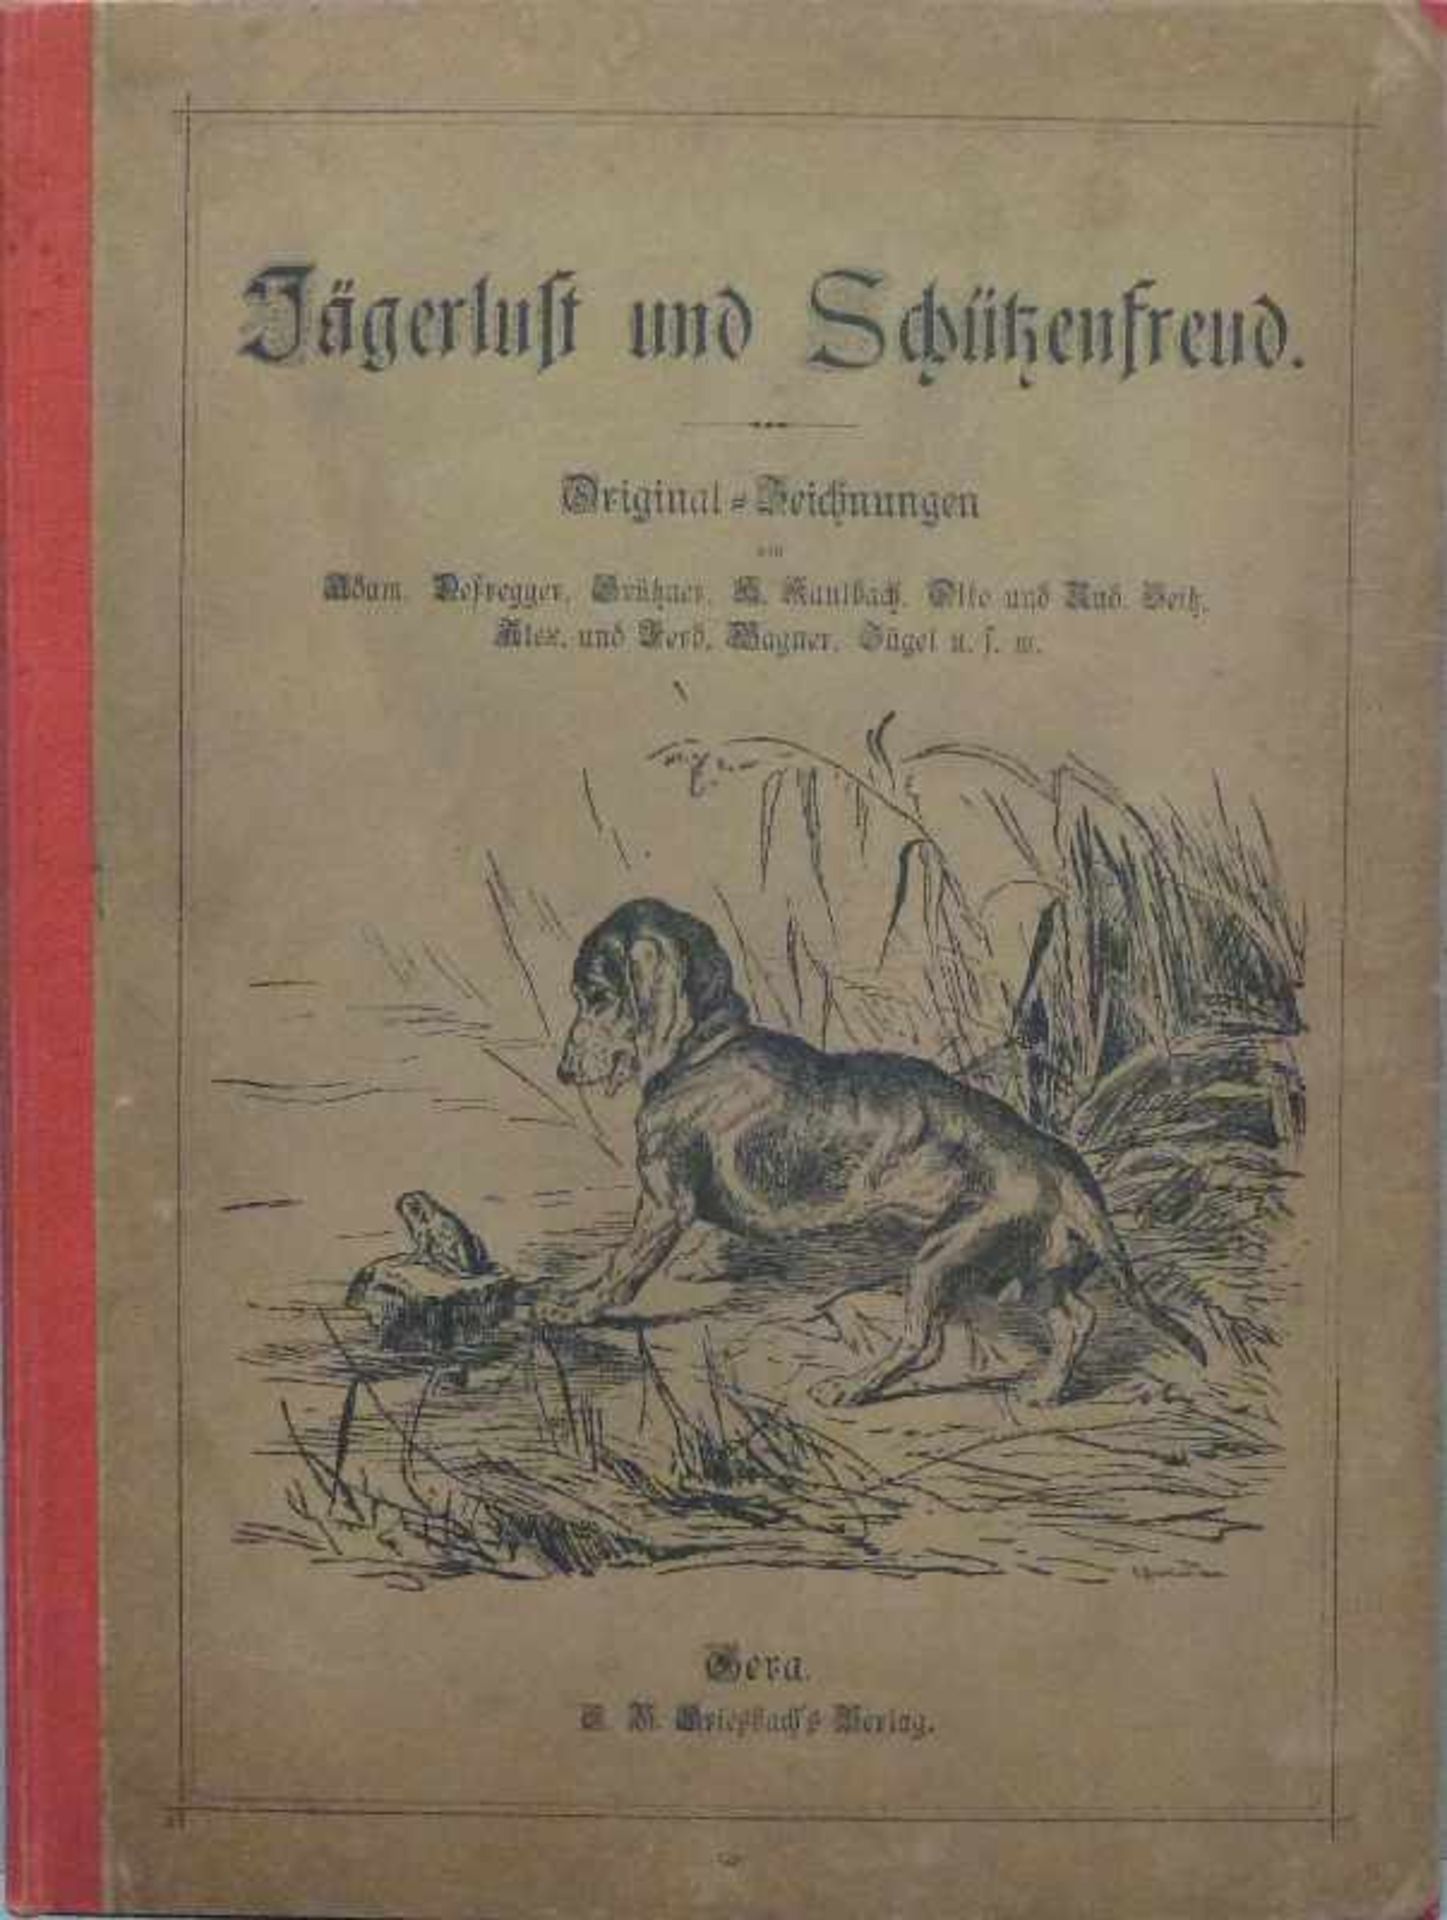 "Jägerlust und Schützenfreud", 1899, Gera, E. B. Griesbach's Verlag Texte und Graphiken nach